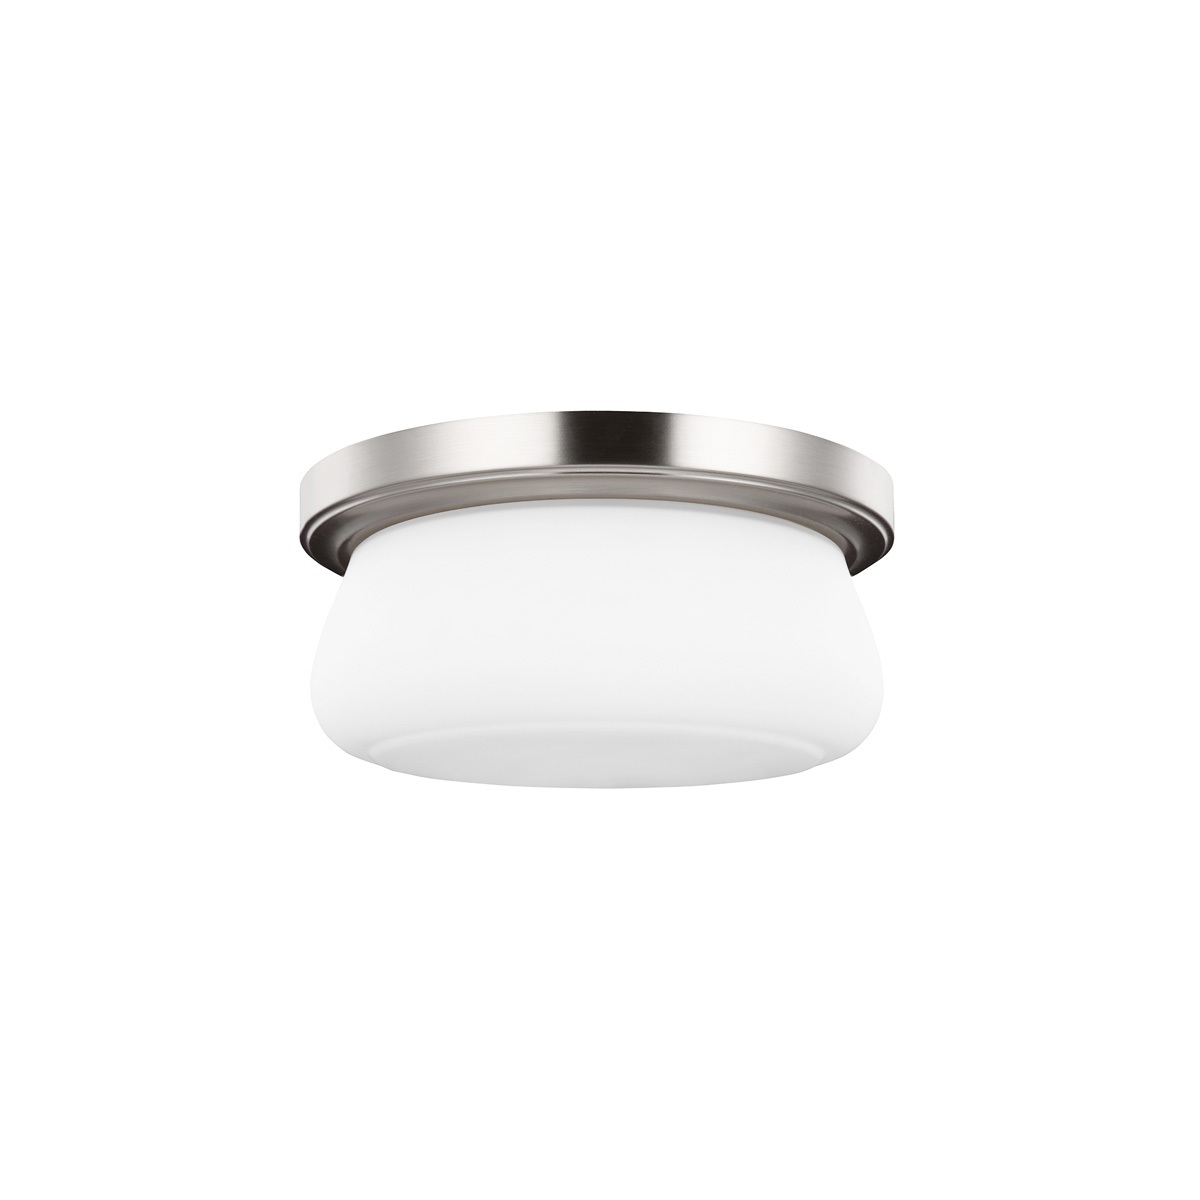 Потолочный светильник для ванных комнат FE-VINTNER-F-M. Бренд: Feiss. Потолочные светильники для ванных комнат